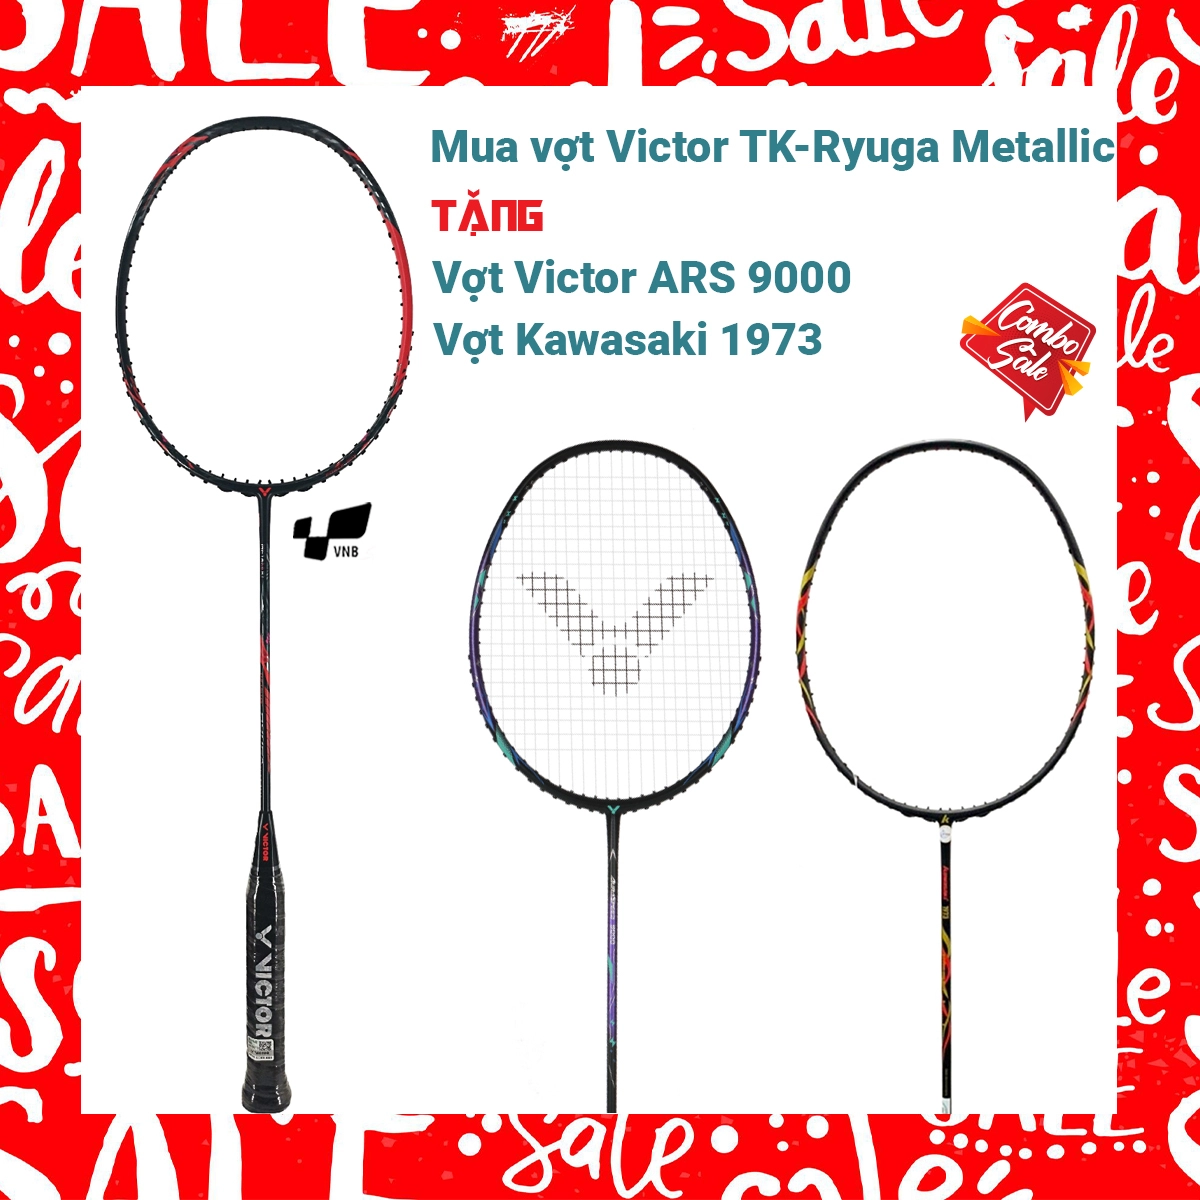 Combo mua vợt cầu lông Victor TK-Ryuga Metallic tặng vợt Victor ARS 9000 + vợt Kawasaki 1973